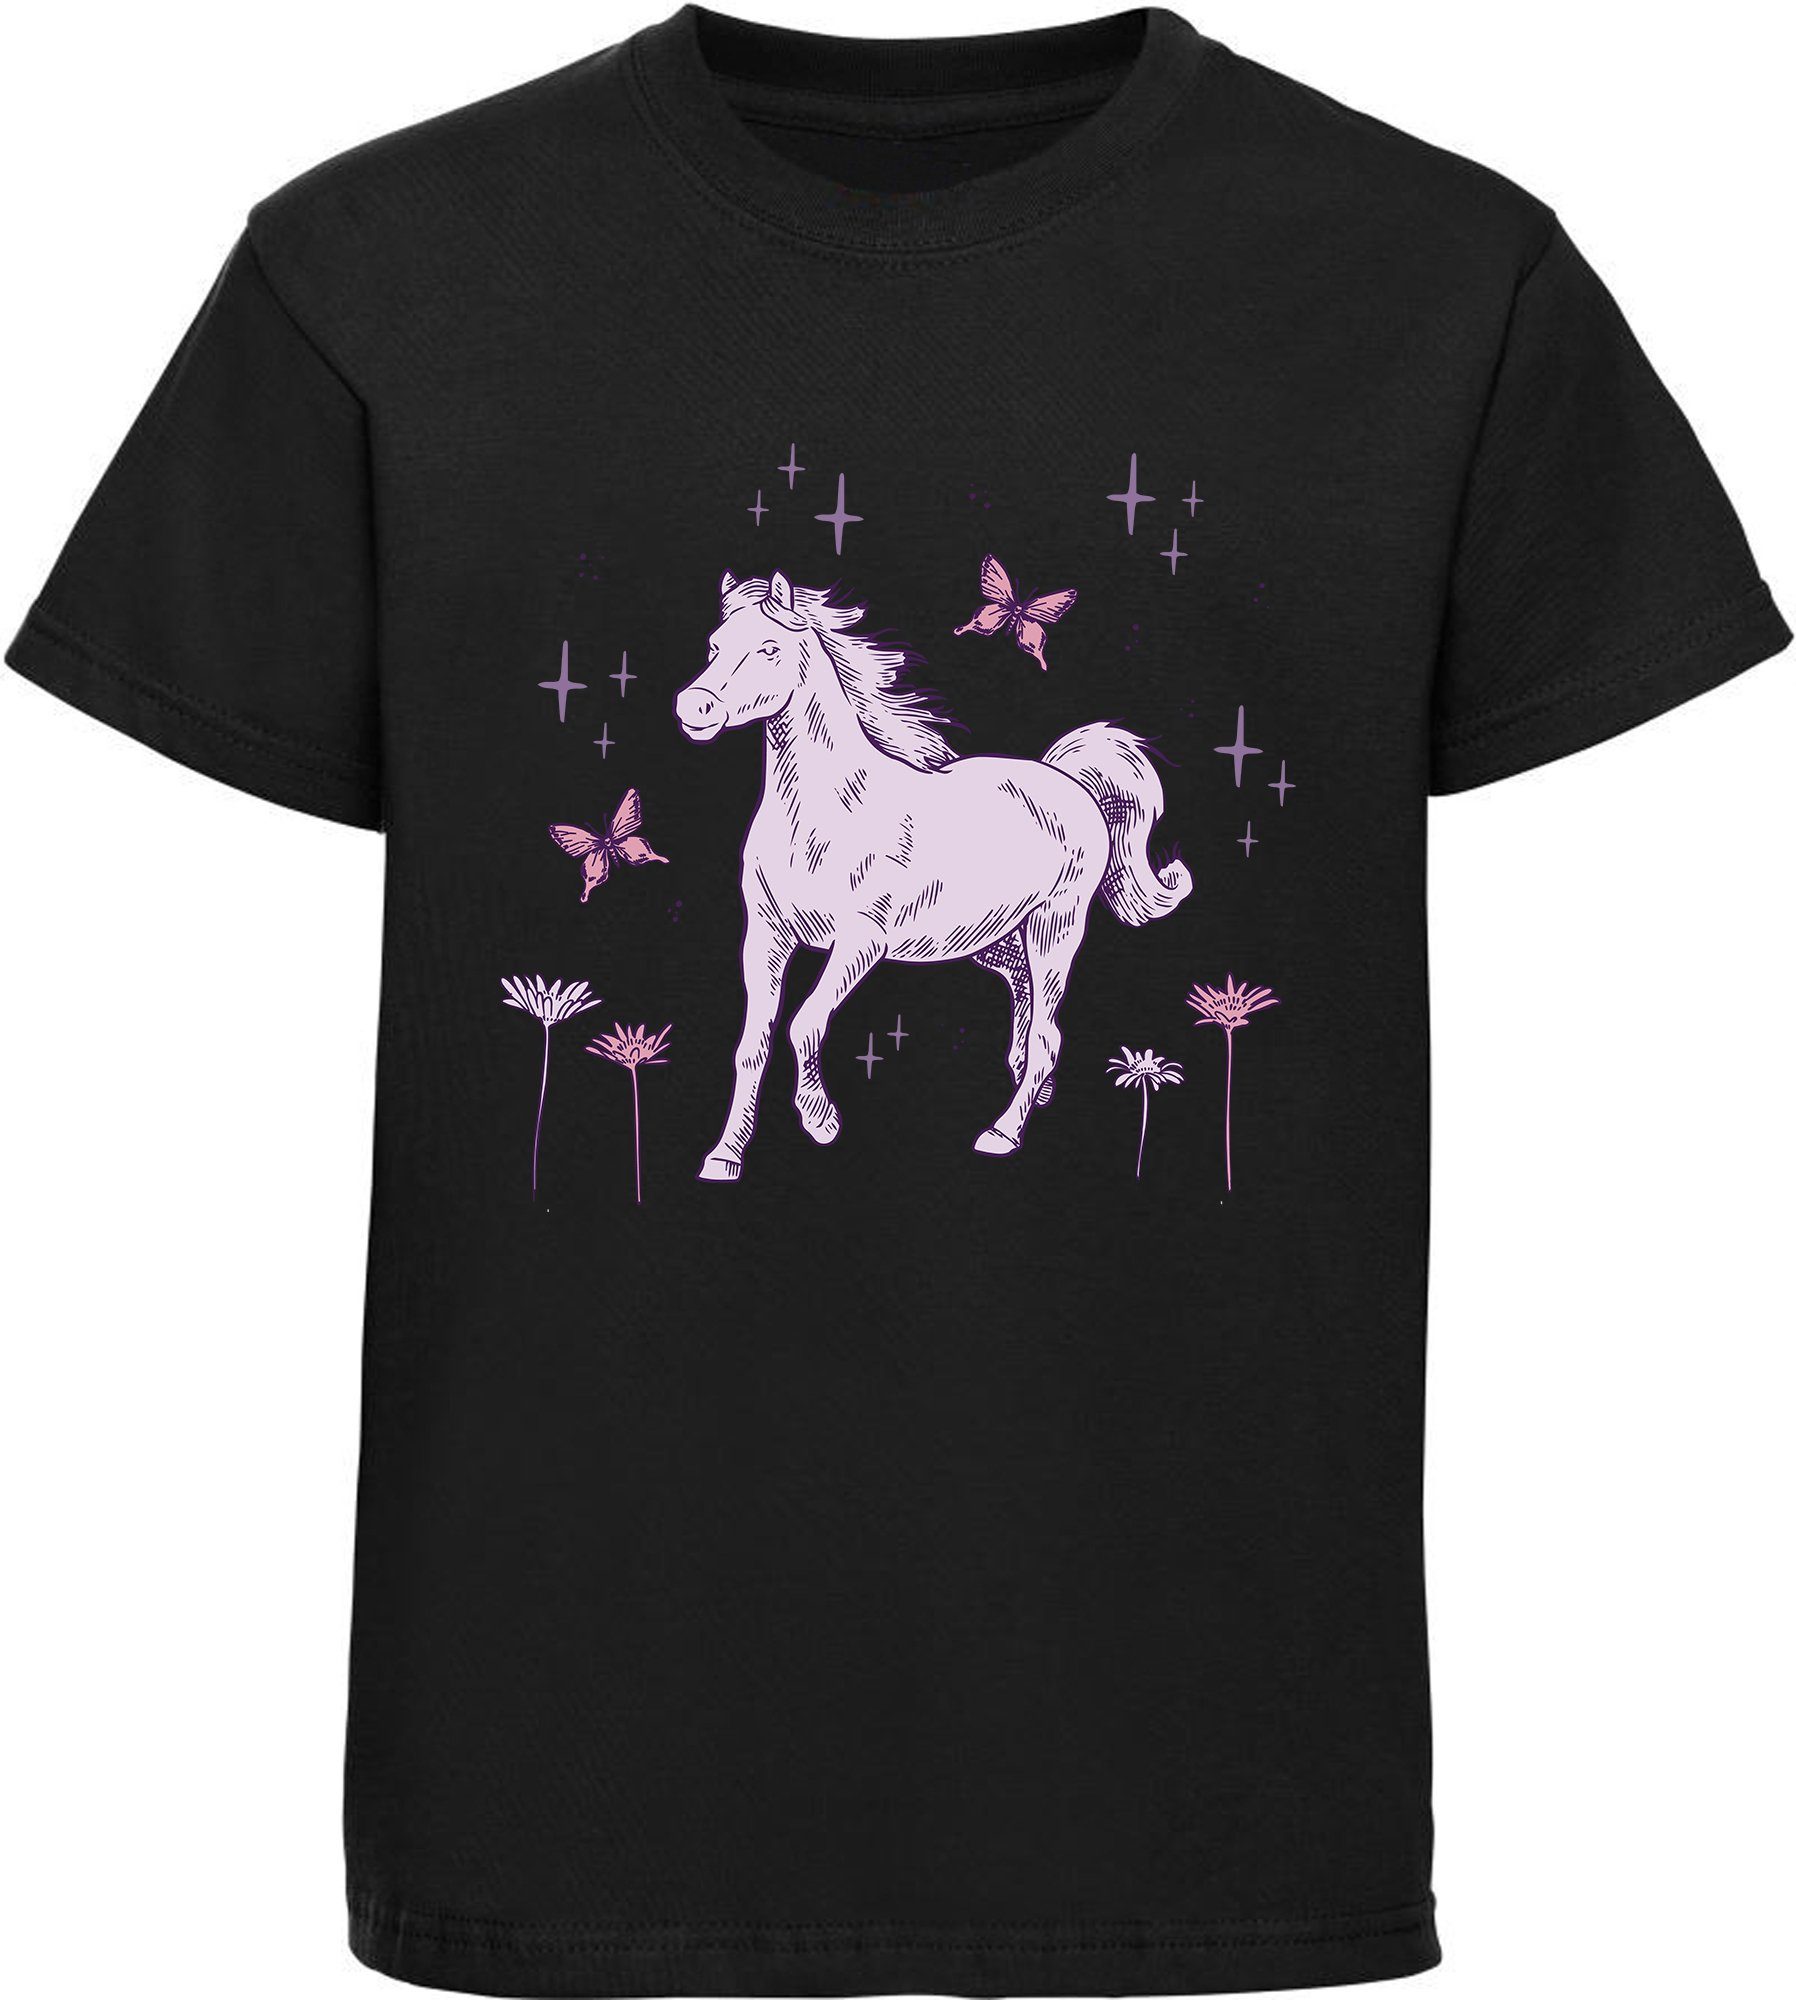 MyDesign24 Print-Shirt bedrucktes Mädchen T-Shirt galoppierendes Pferd und Blumen Baumwollshirt mit Aufdruck, i144 schwarz